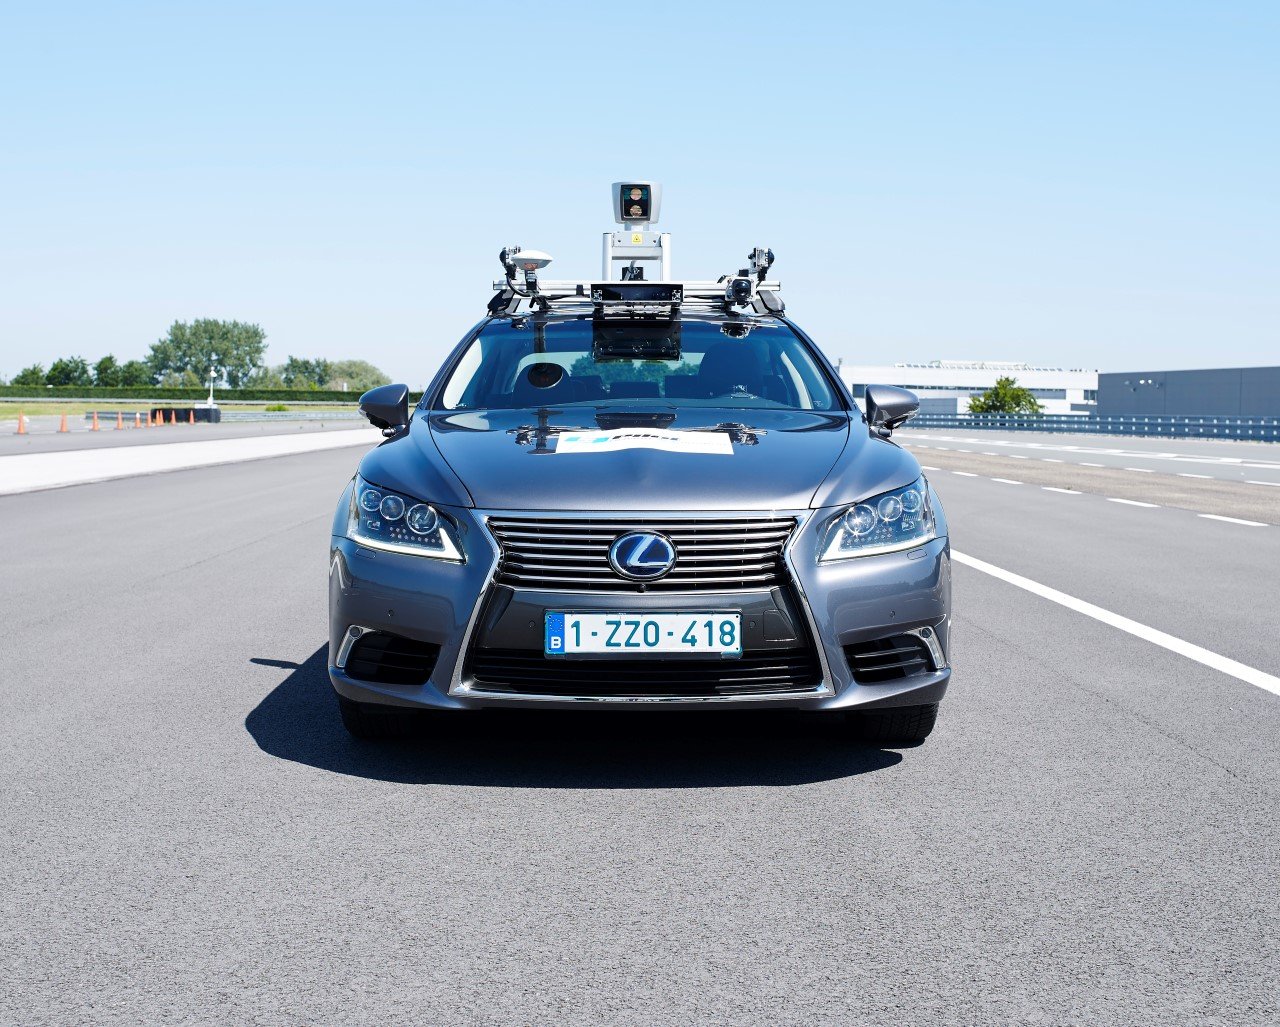 Toyota začíná testovat systémy autonomního řízení v ostrém provozu v Bruselu